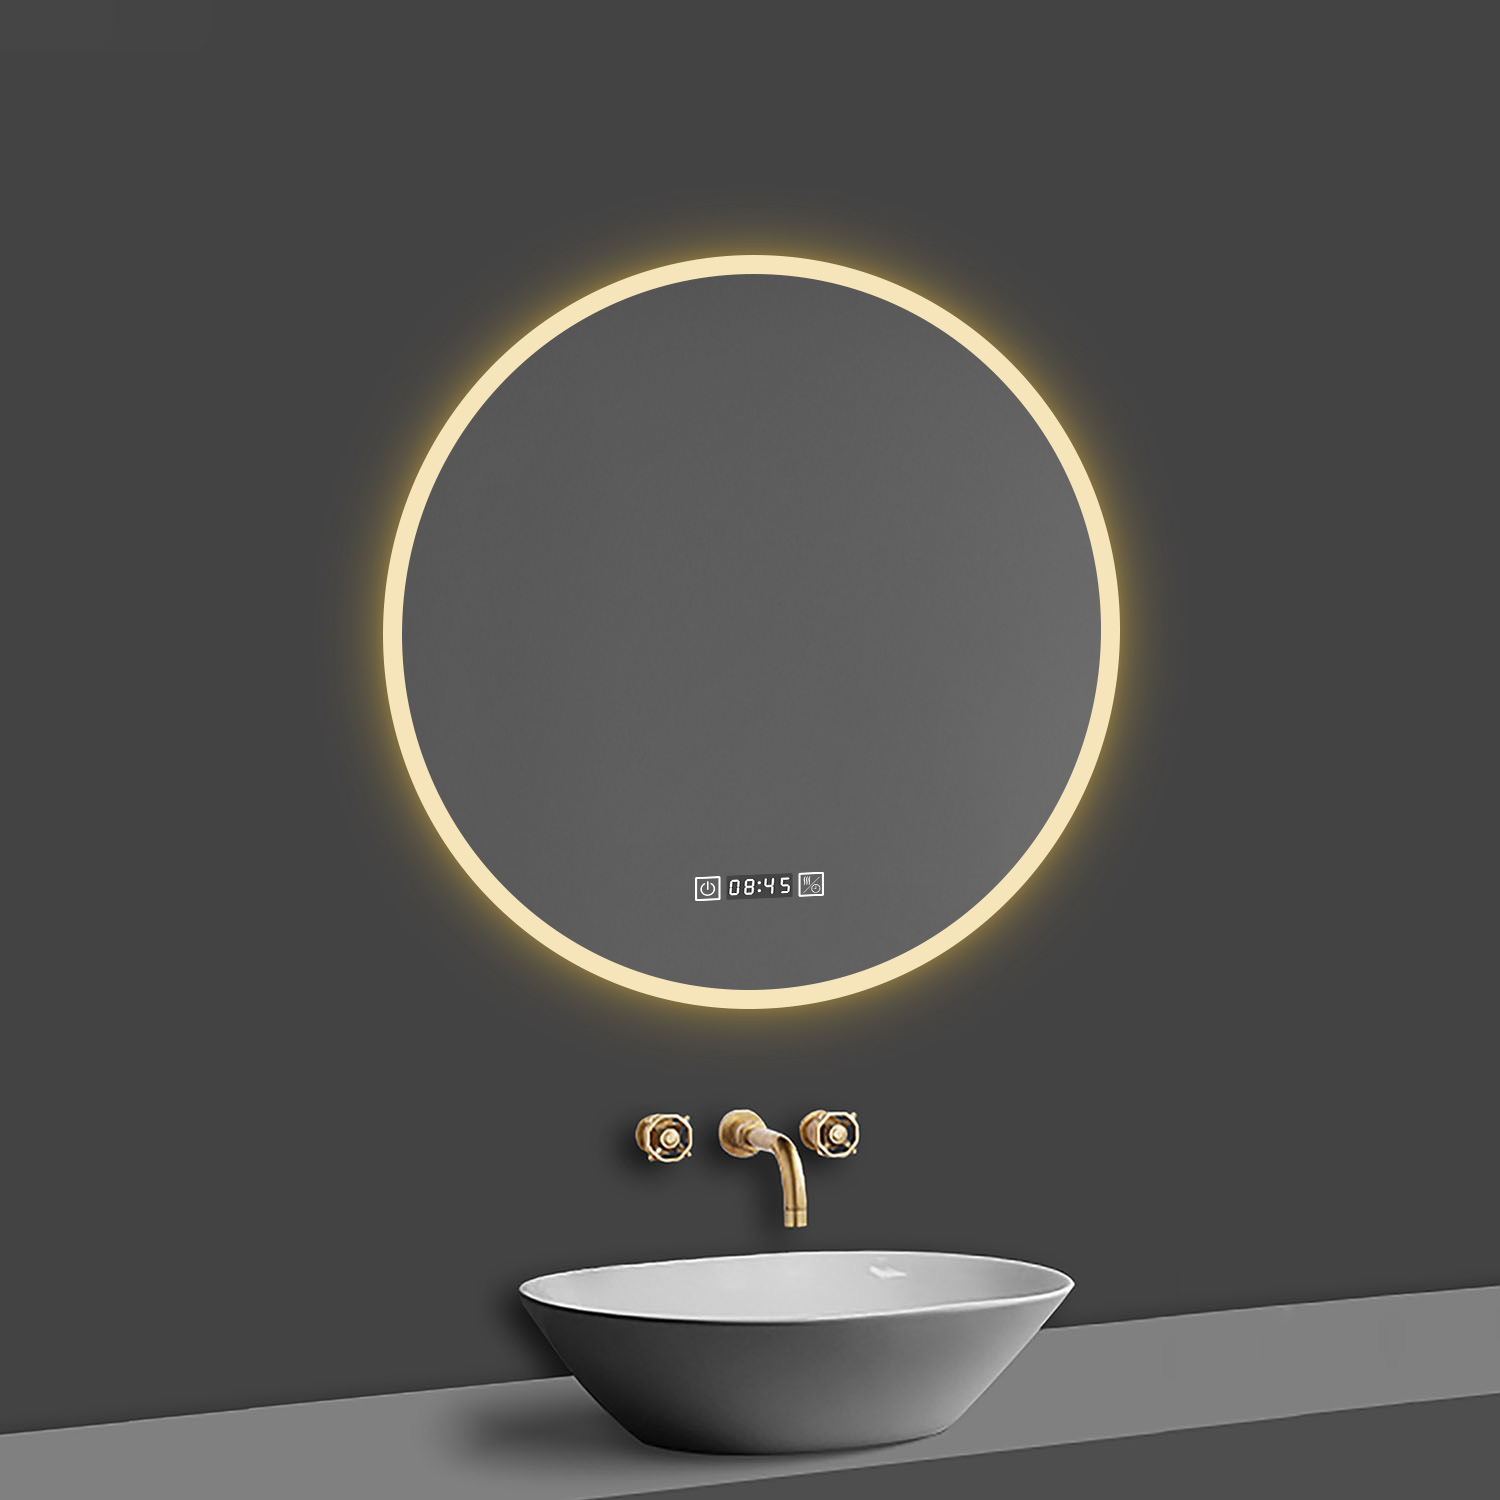 LED Spiegel Rund 80 cm Kalt/Warmweiß dimmbar Uhr TOUCH BESCHLAGFREI Wandspiegel